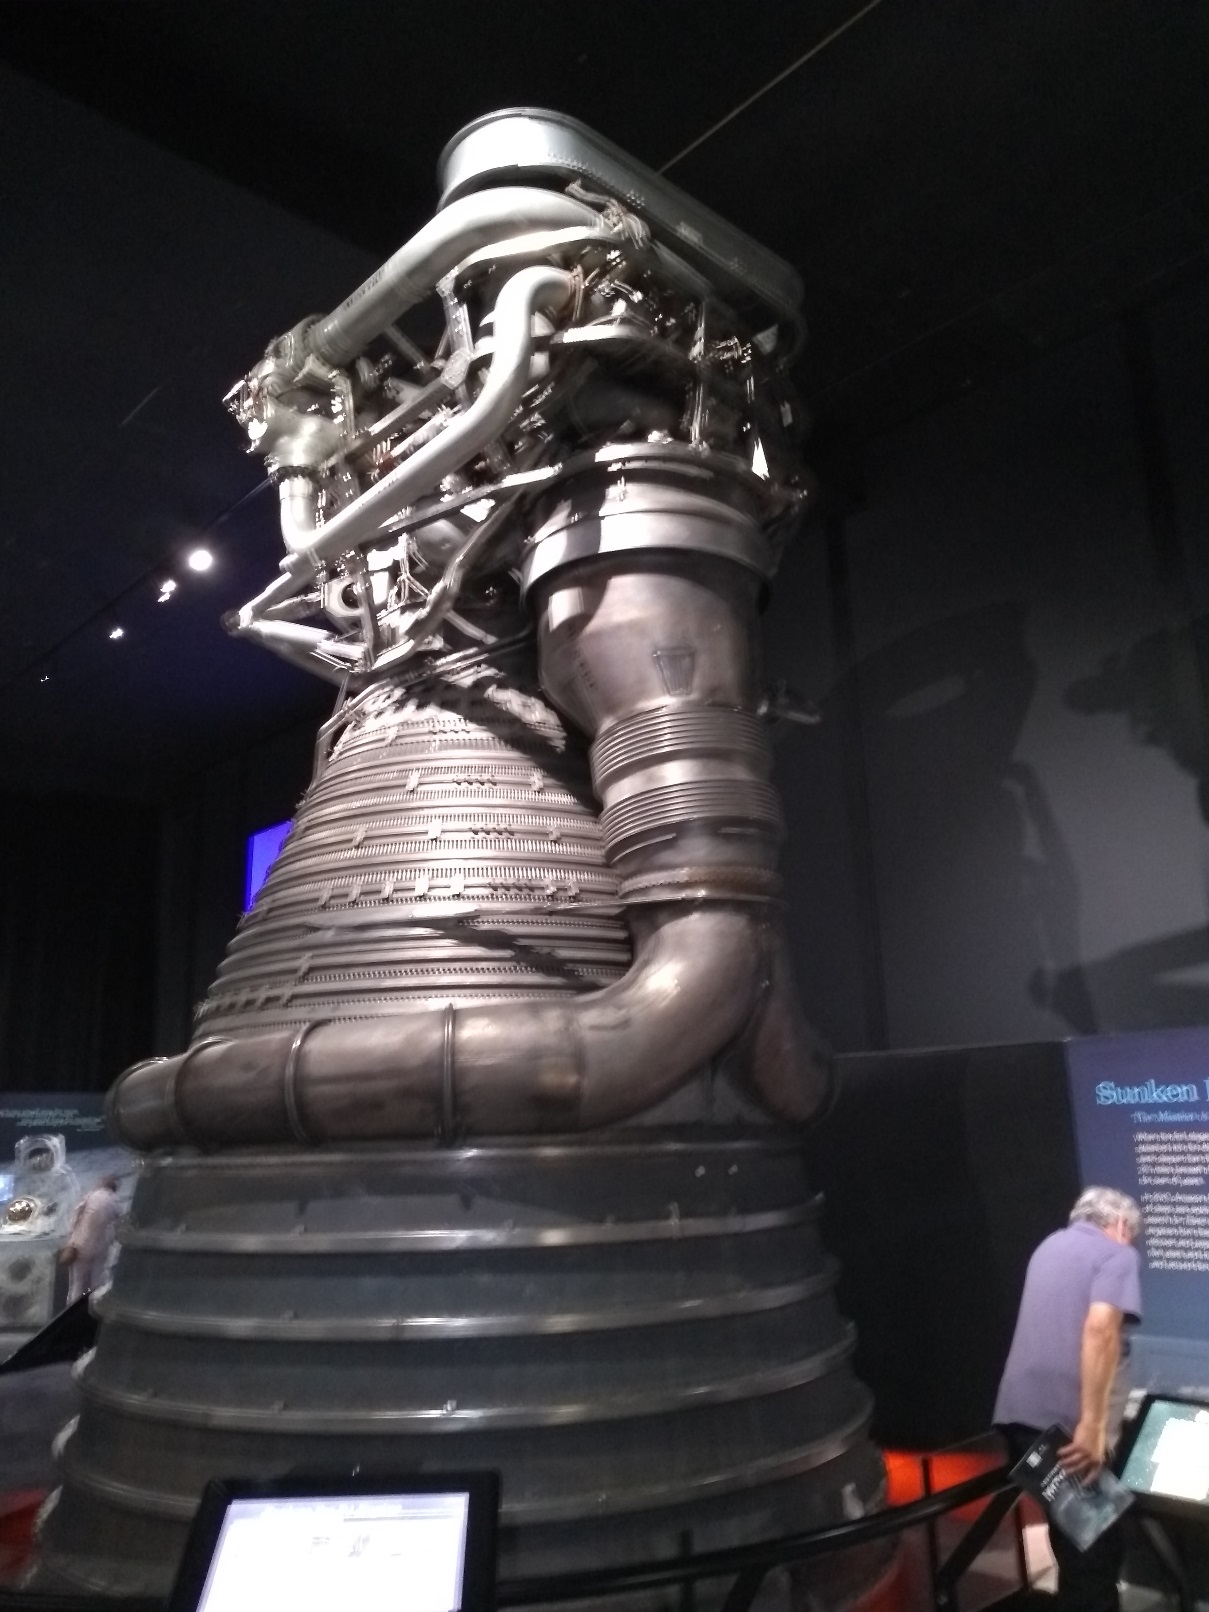 Pro srovnání původní motor F-1 rakety Saturn 5 připravovaný pro Apolla 16, který se ale nakonec nepoužil, na výstavě k výročí Apolla 11 v Leteckém muzeu Seattle (zdroj Vladimír Wagner).